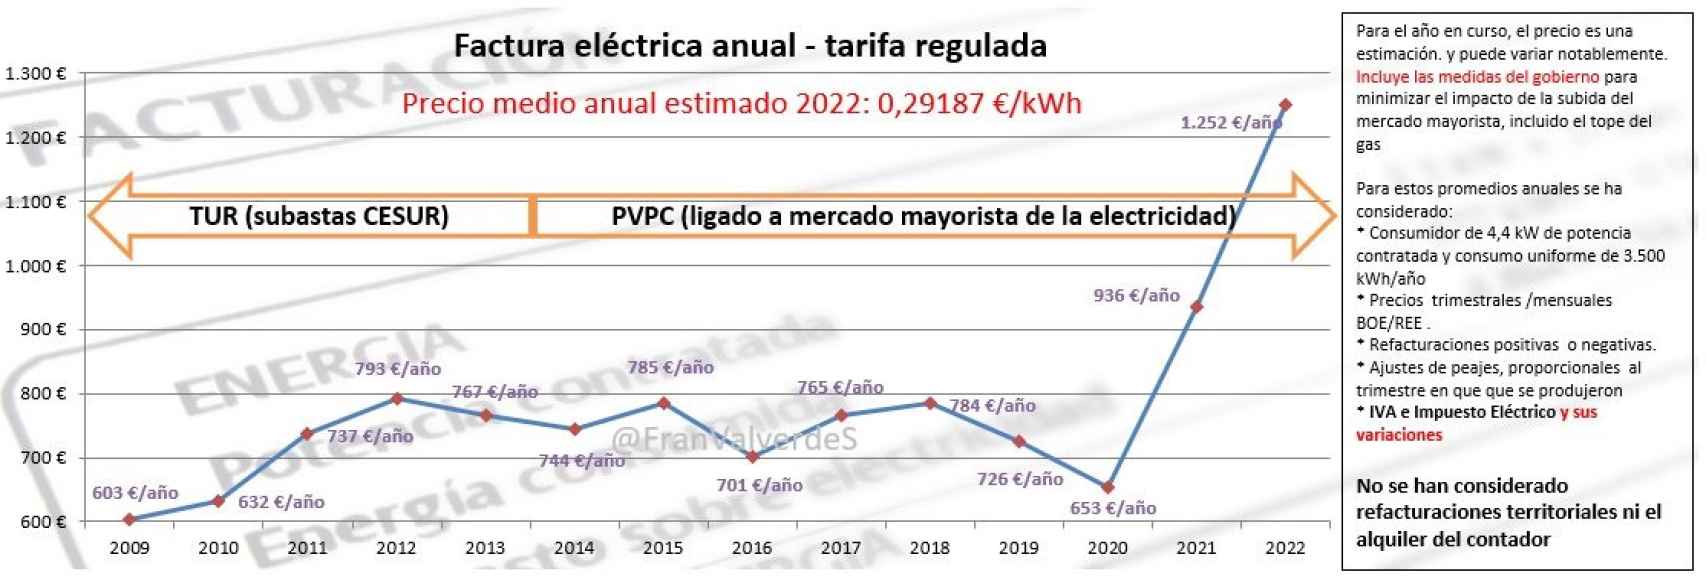 Factura eléctrica anual PVPC